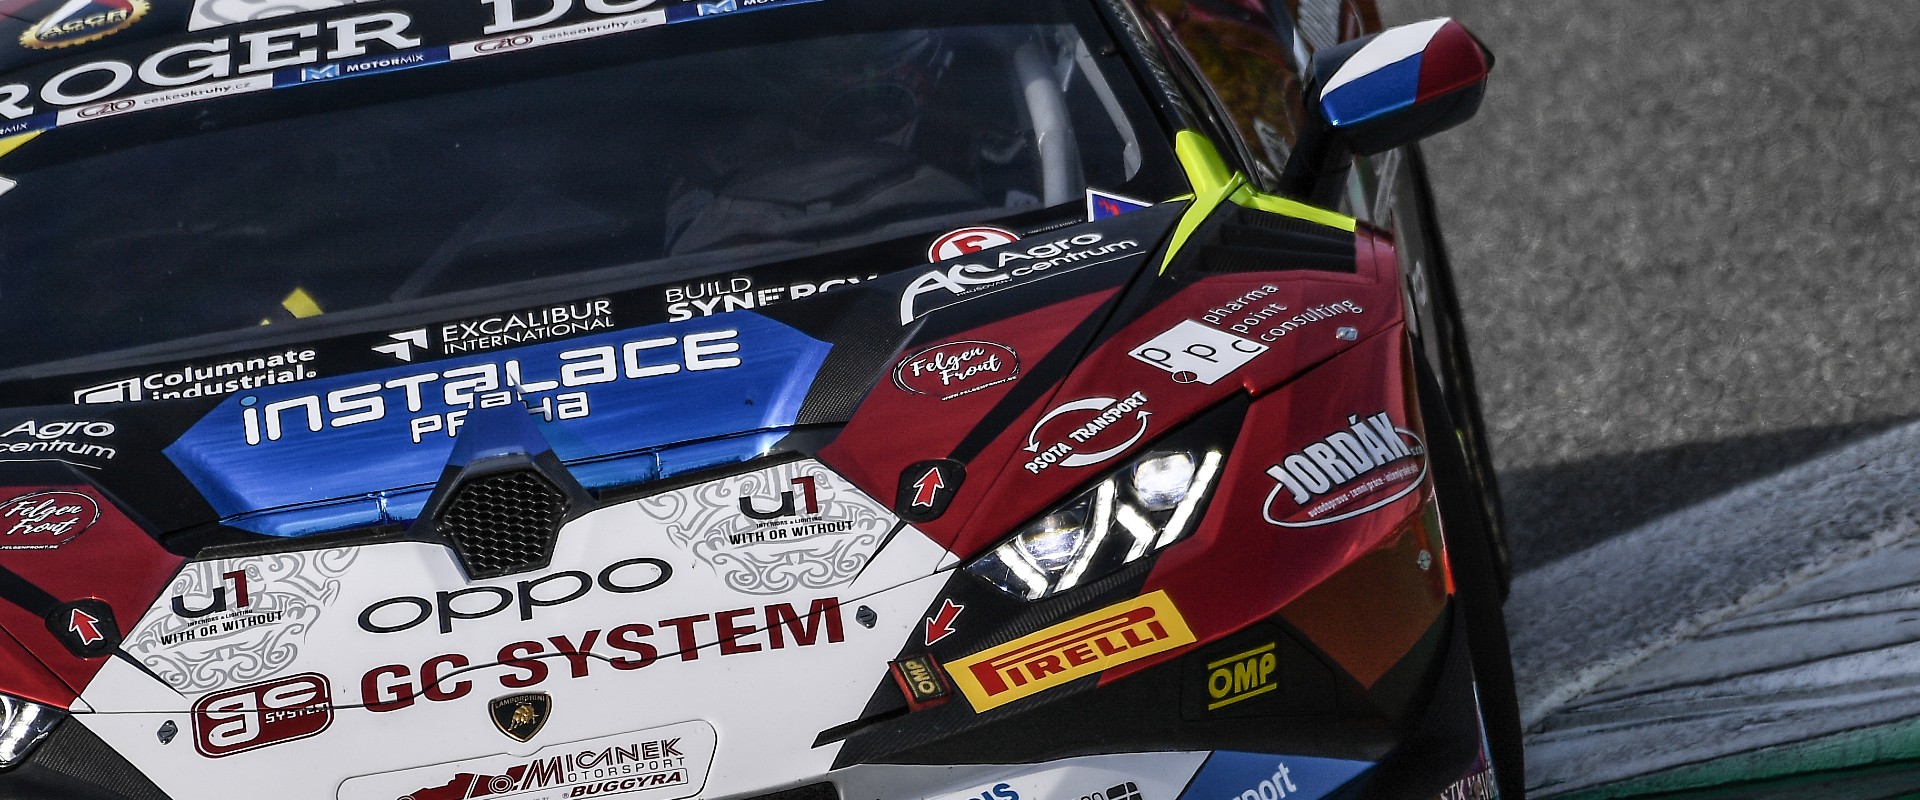 Start sezony v Monze: závodní víkend týmu zkomplikovali stevardi i safety car, podium ale není daleko